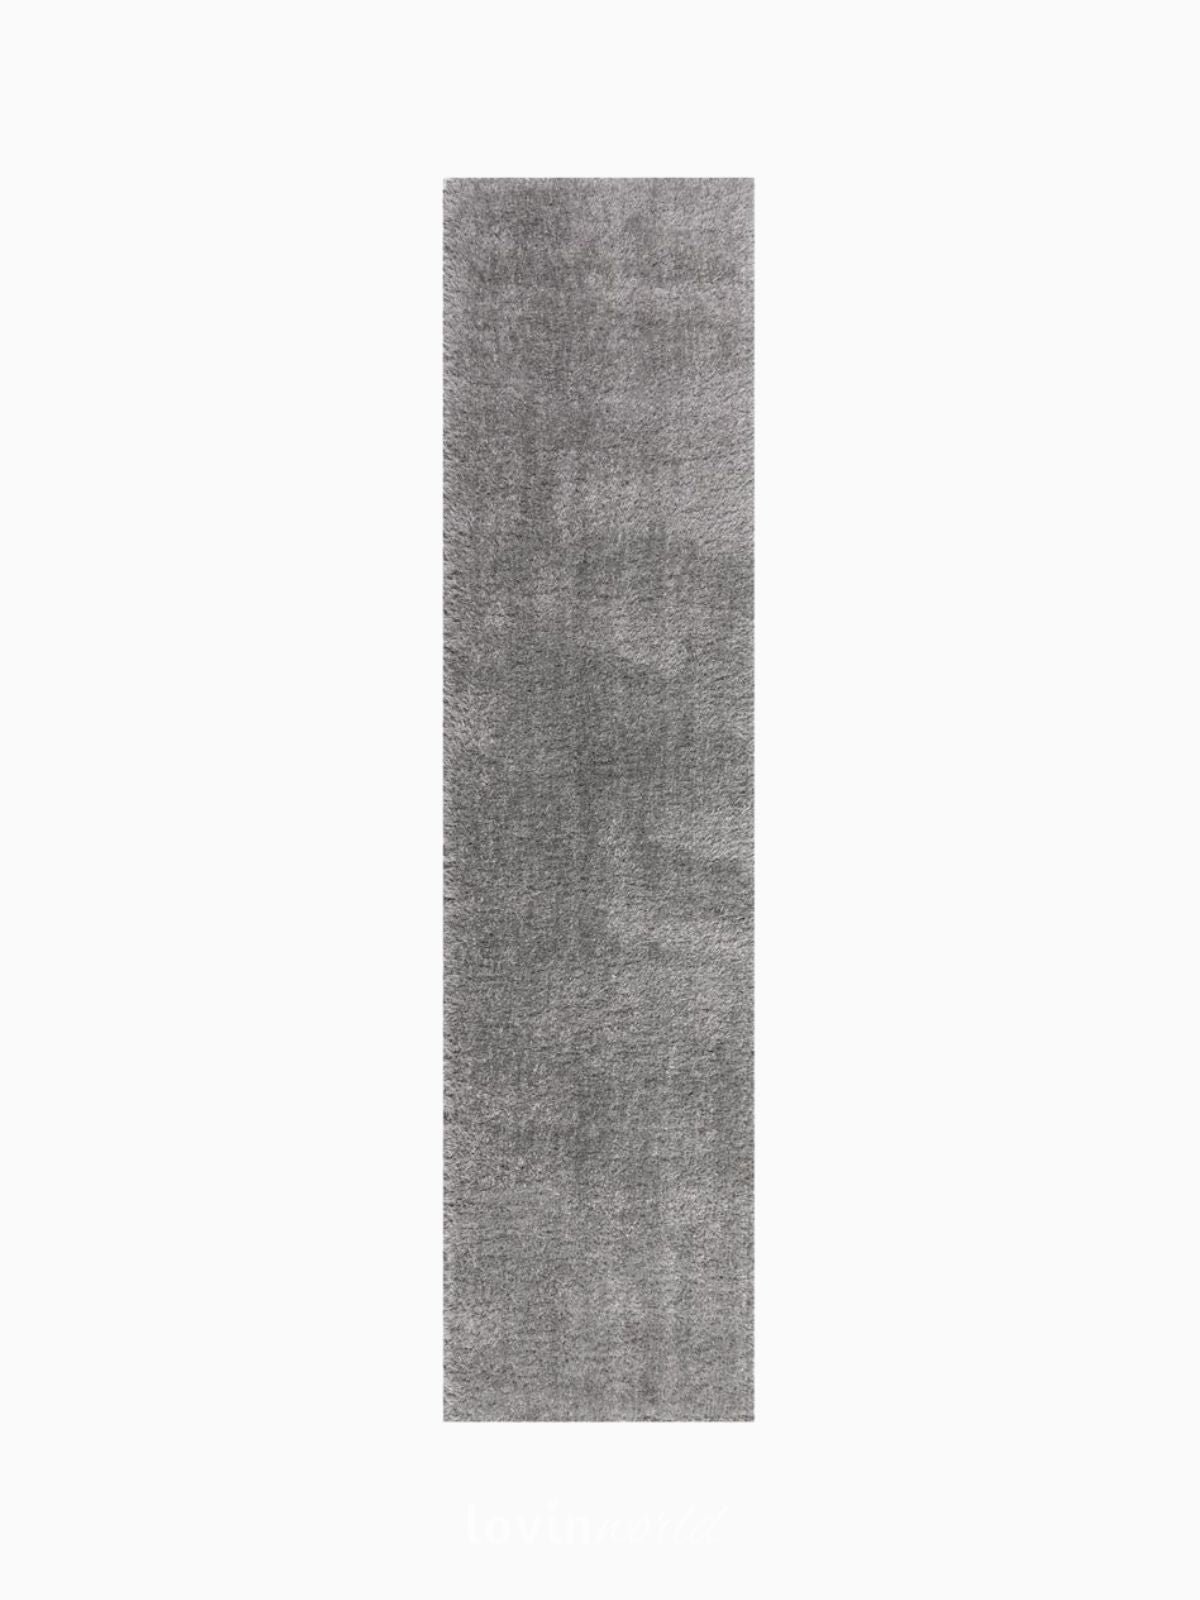 Runner shaggy Velvet in poliestere, colore grigio chiaro 60x230 cm.-1